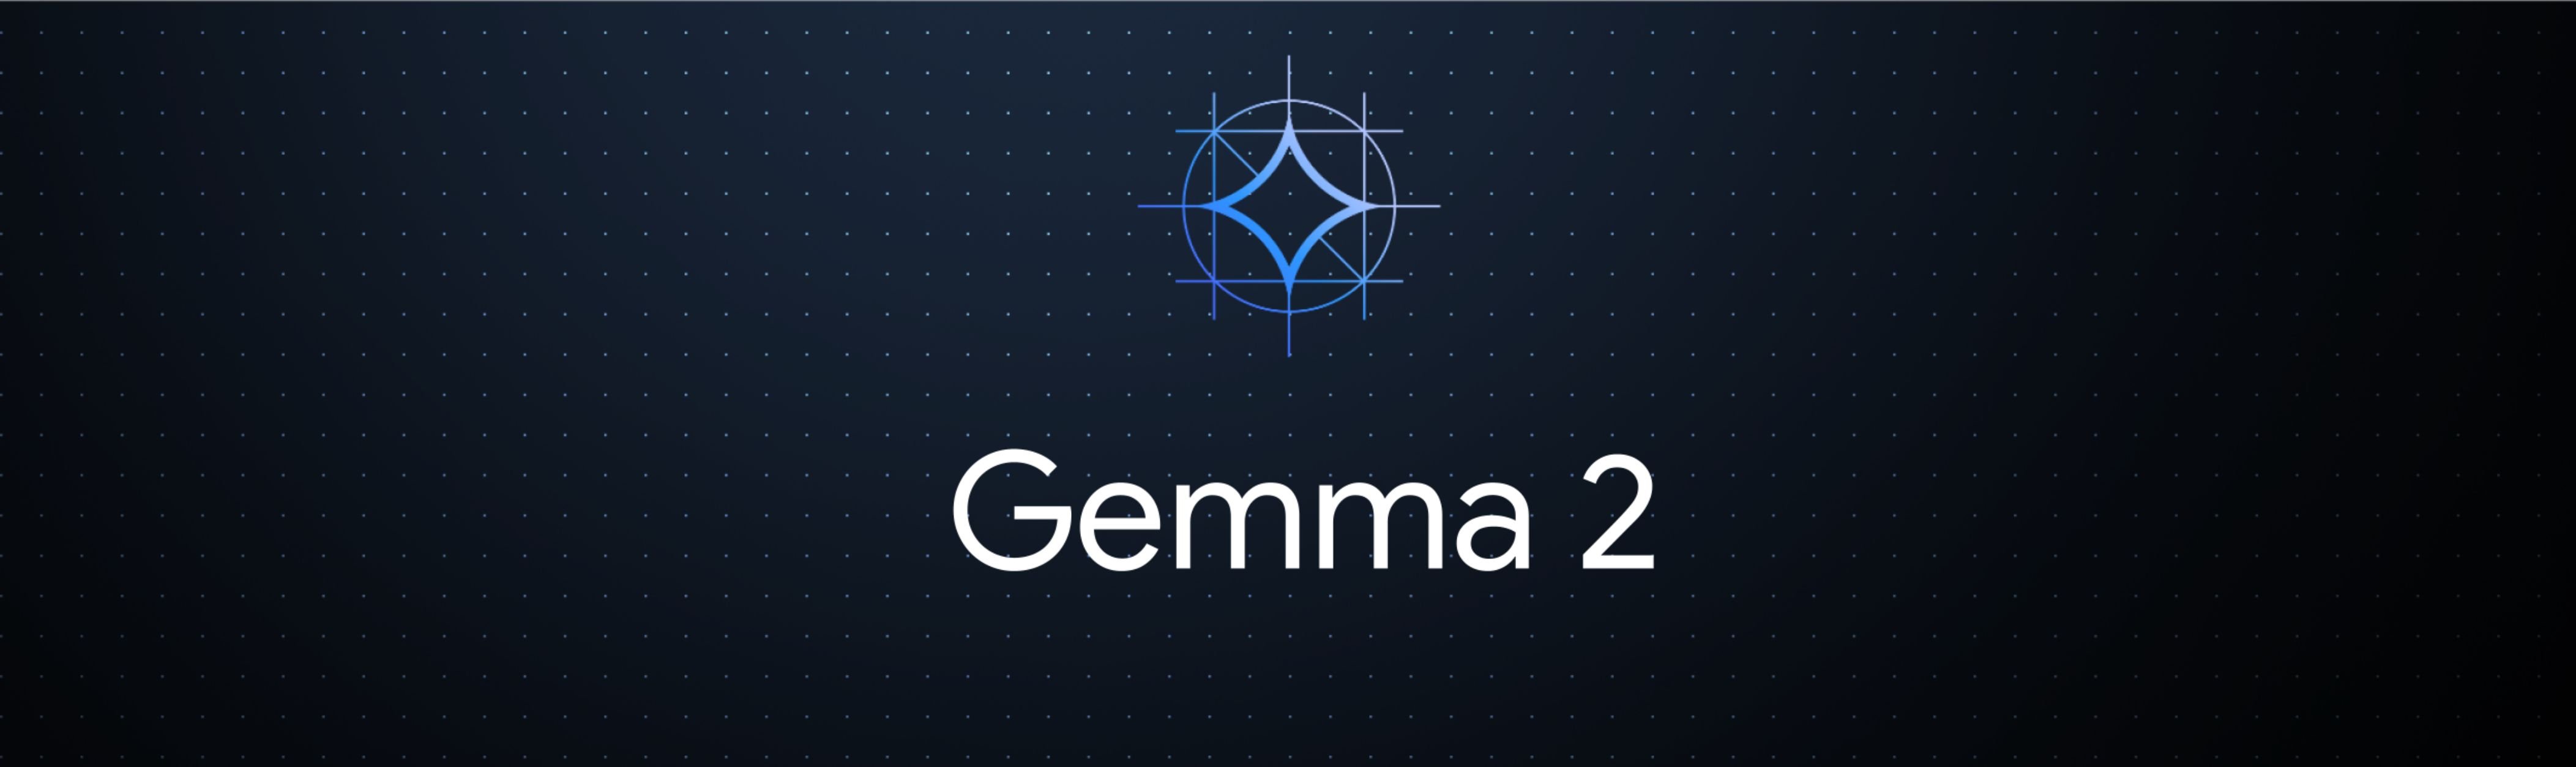 Gemma-2-Banner